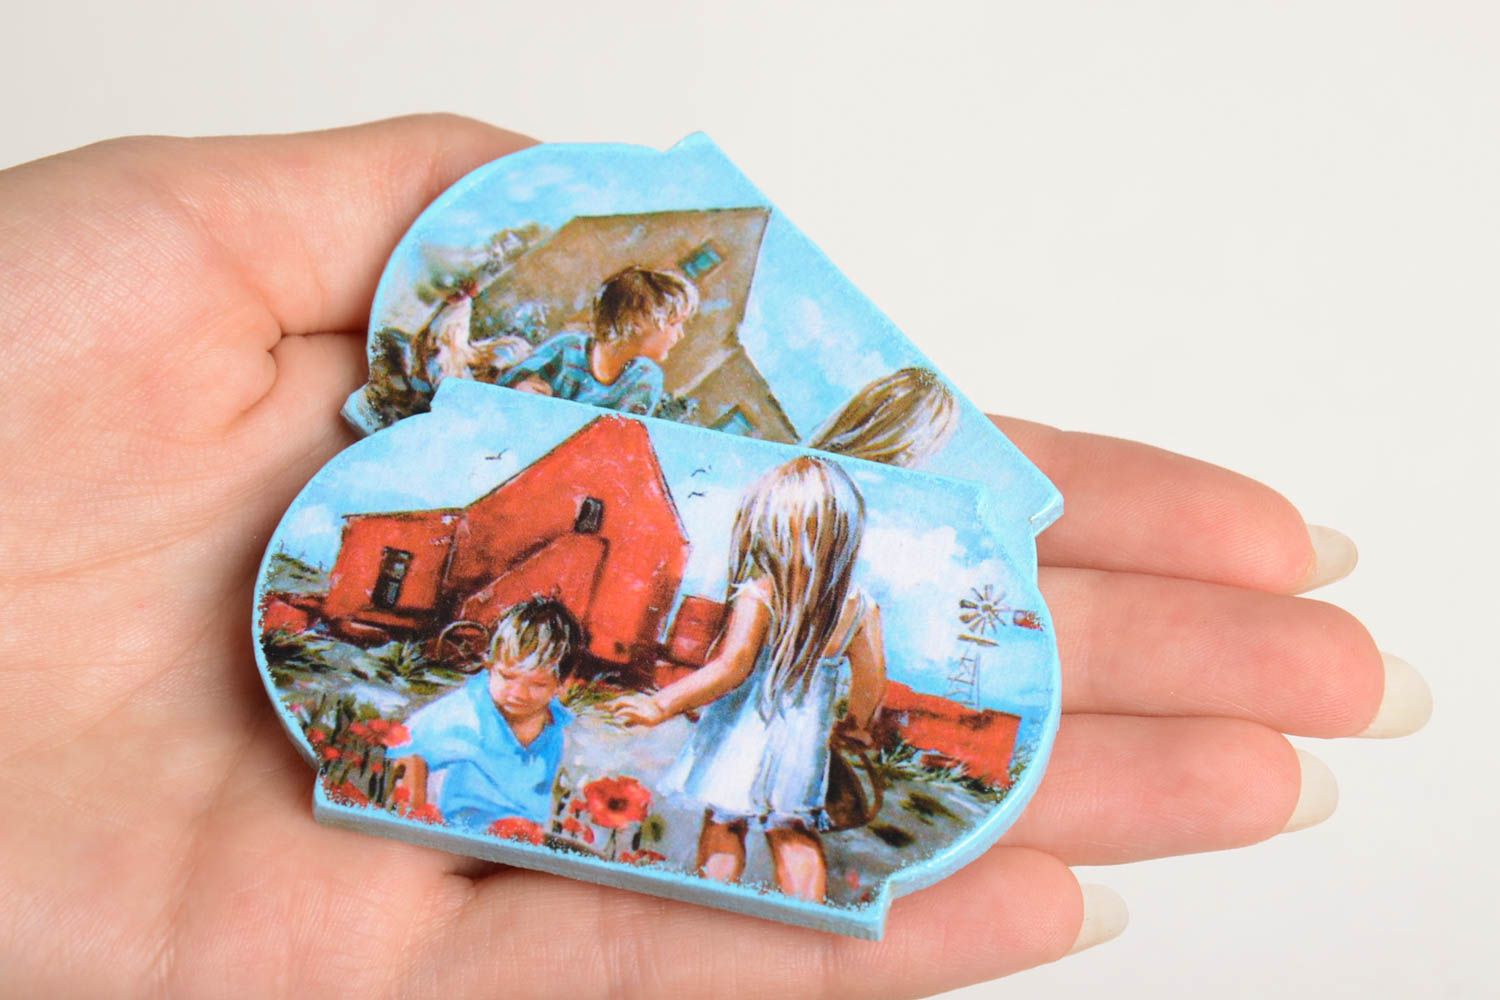 Imanes hechos a mano elementos decorativos souvenirs originales niños en ciudad foto 4